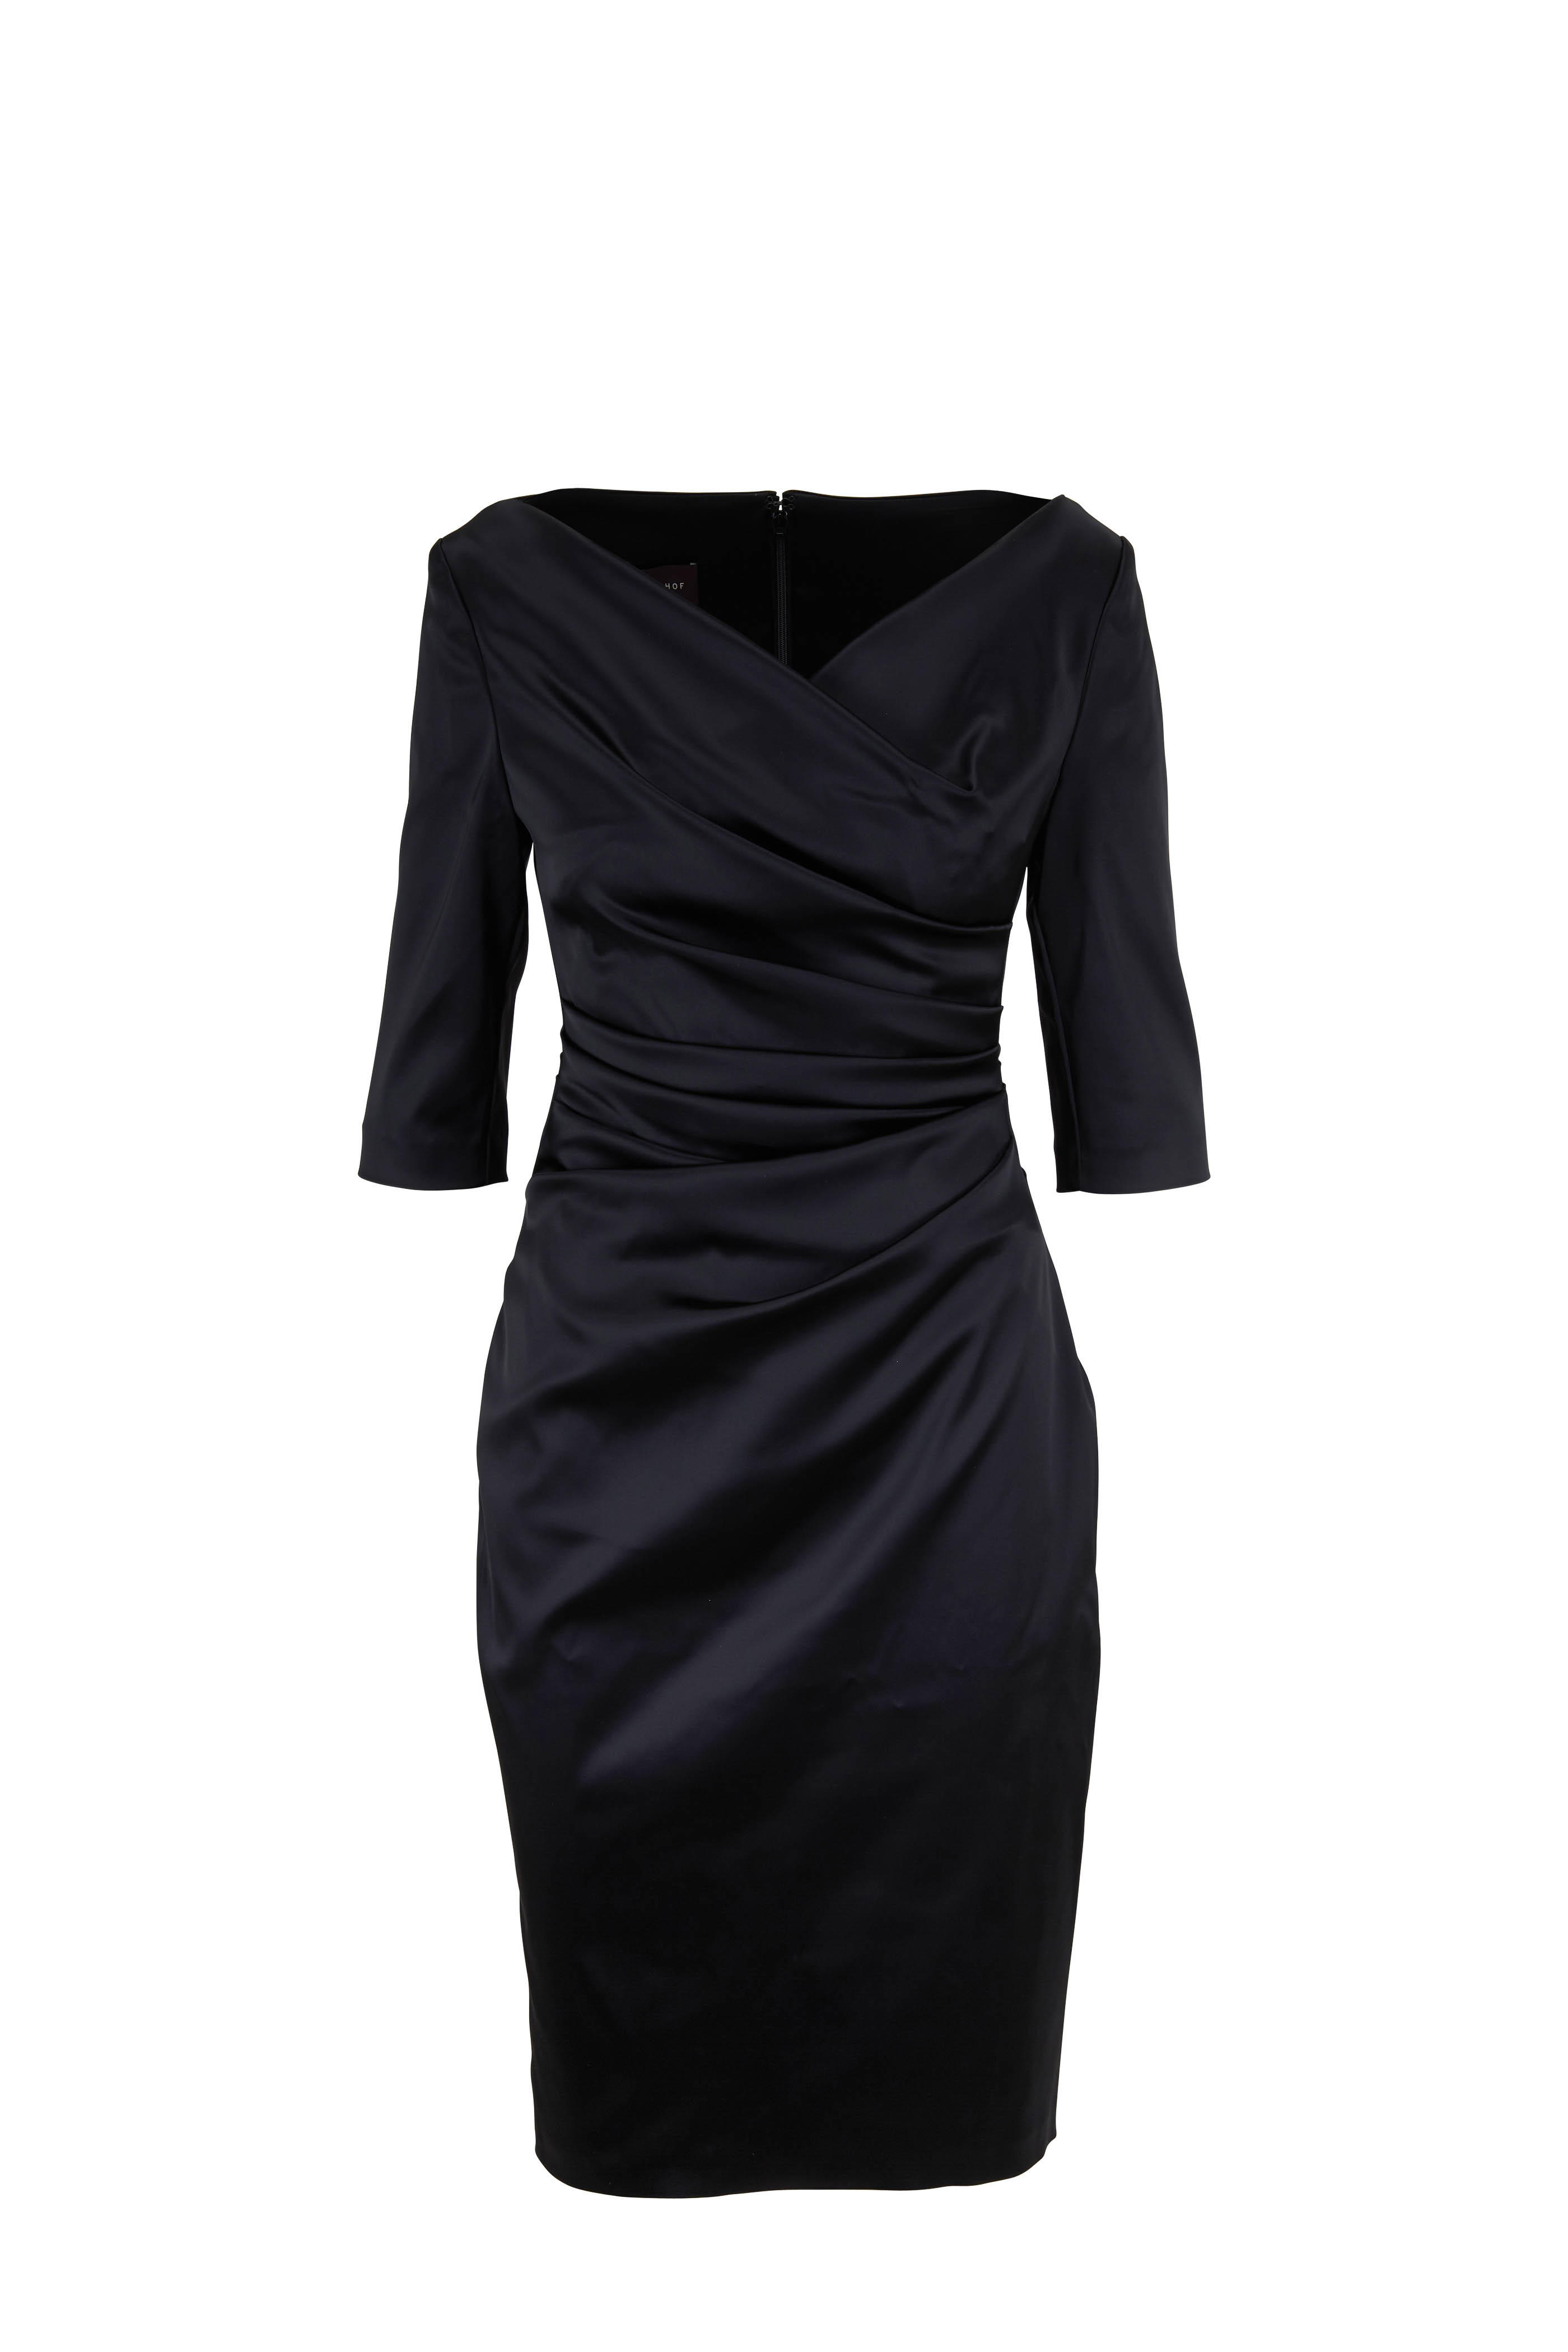 Komoe3 Black Elbow Sleeve Ruched Dress